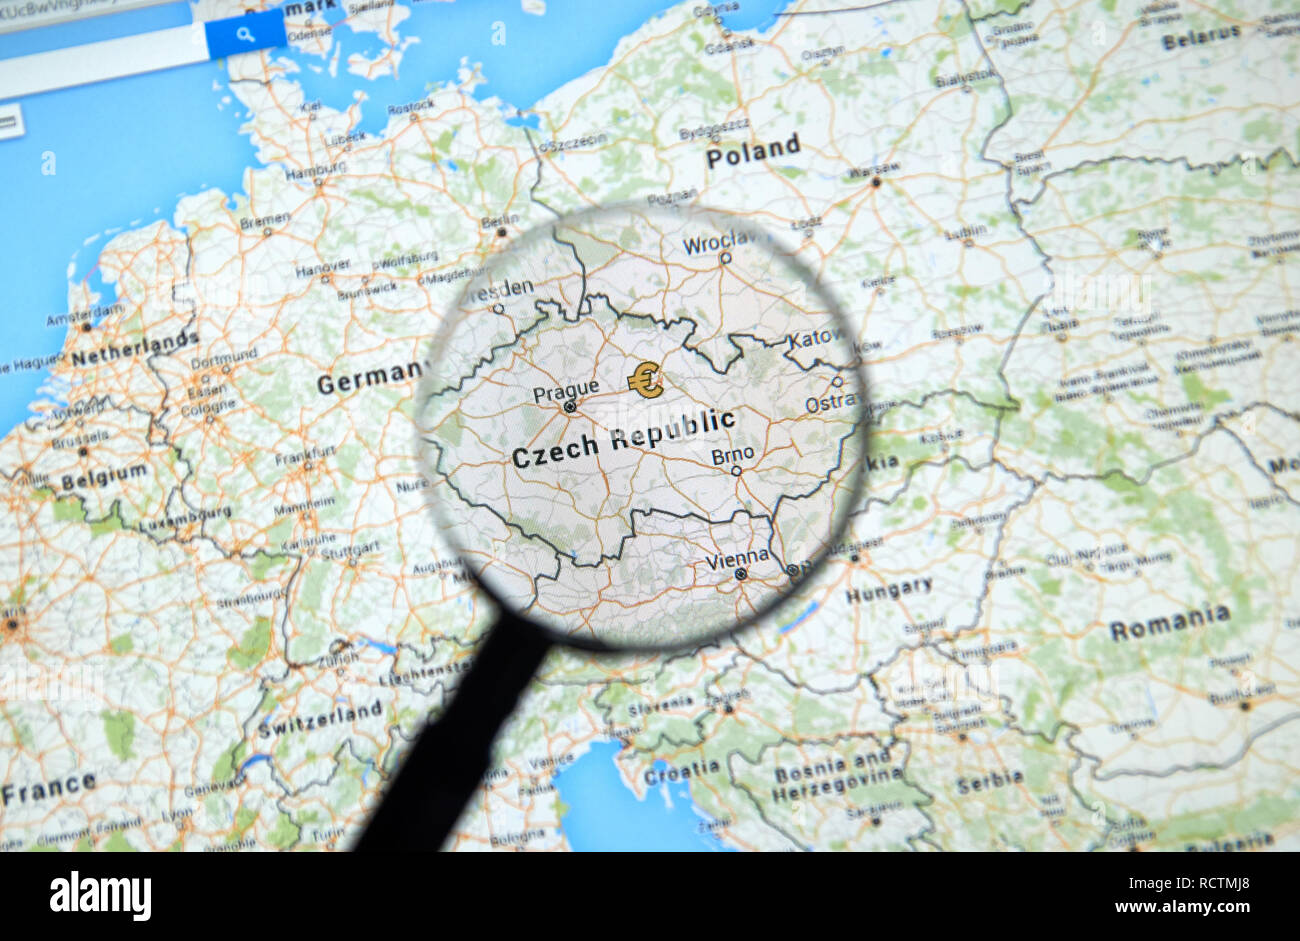 MONTREAL, KANADA - 24. JUNI 2016 - Tschechische Republik auf Google Maps App unter der Lupe. Die Tschechische Republik ist ein europäisches Land und ein Mitglied der EU. Stockfoto